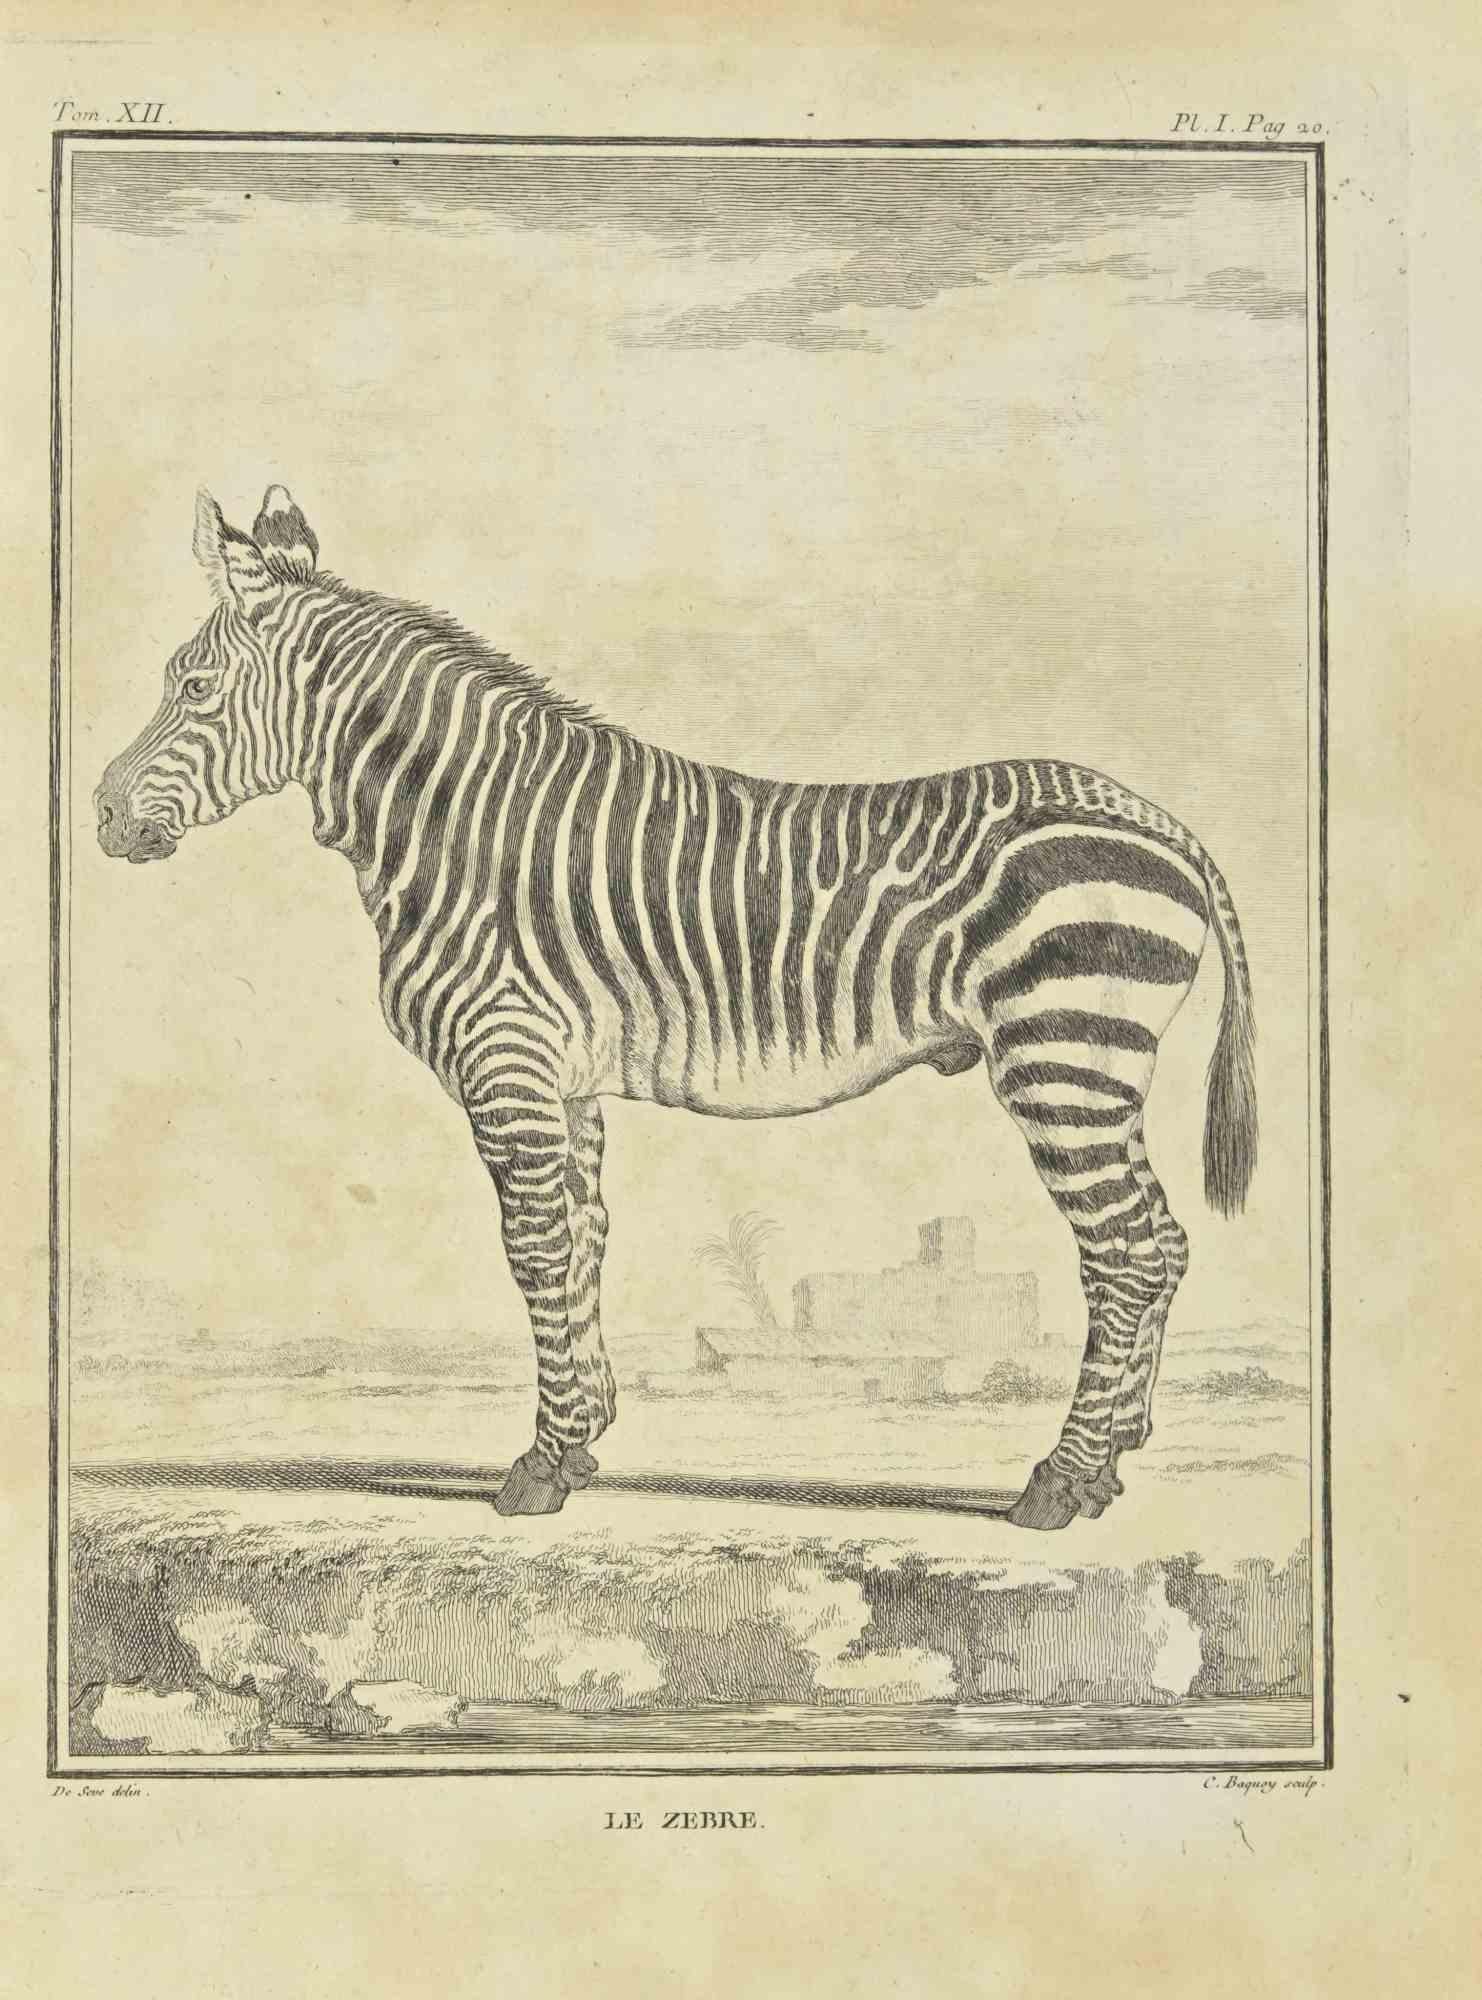 Zebra est une gravure réalisée par Jean Charles Baquoy en 1771.

Il appartient à la suite "Histoire Naturelle de Buffon".

La signature de l'Artistics est gravée en bas à droite.

Bon état avec de légères rousseurs.